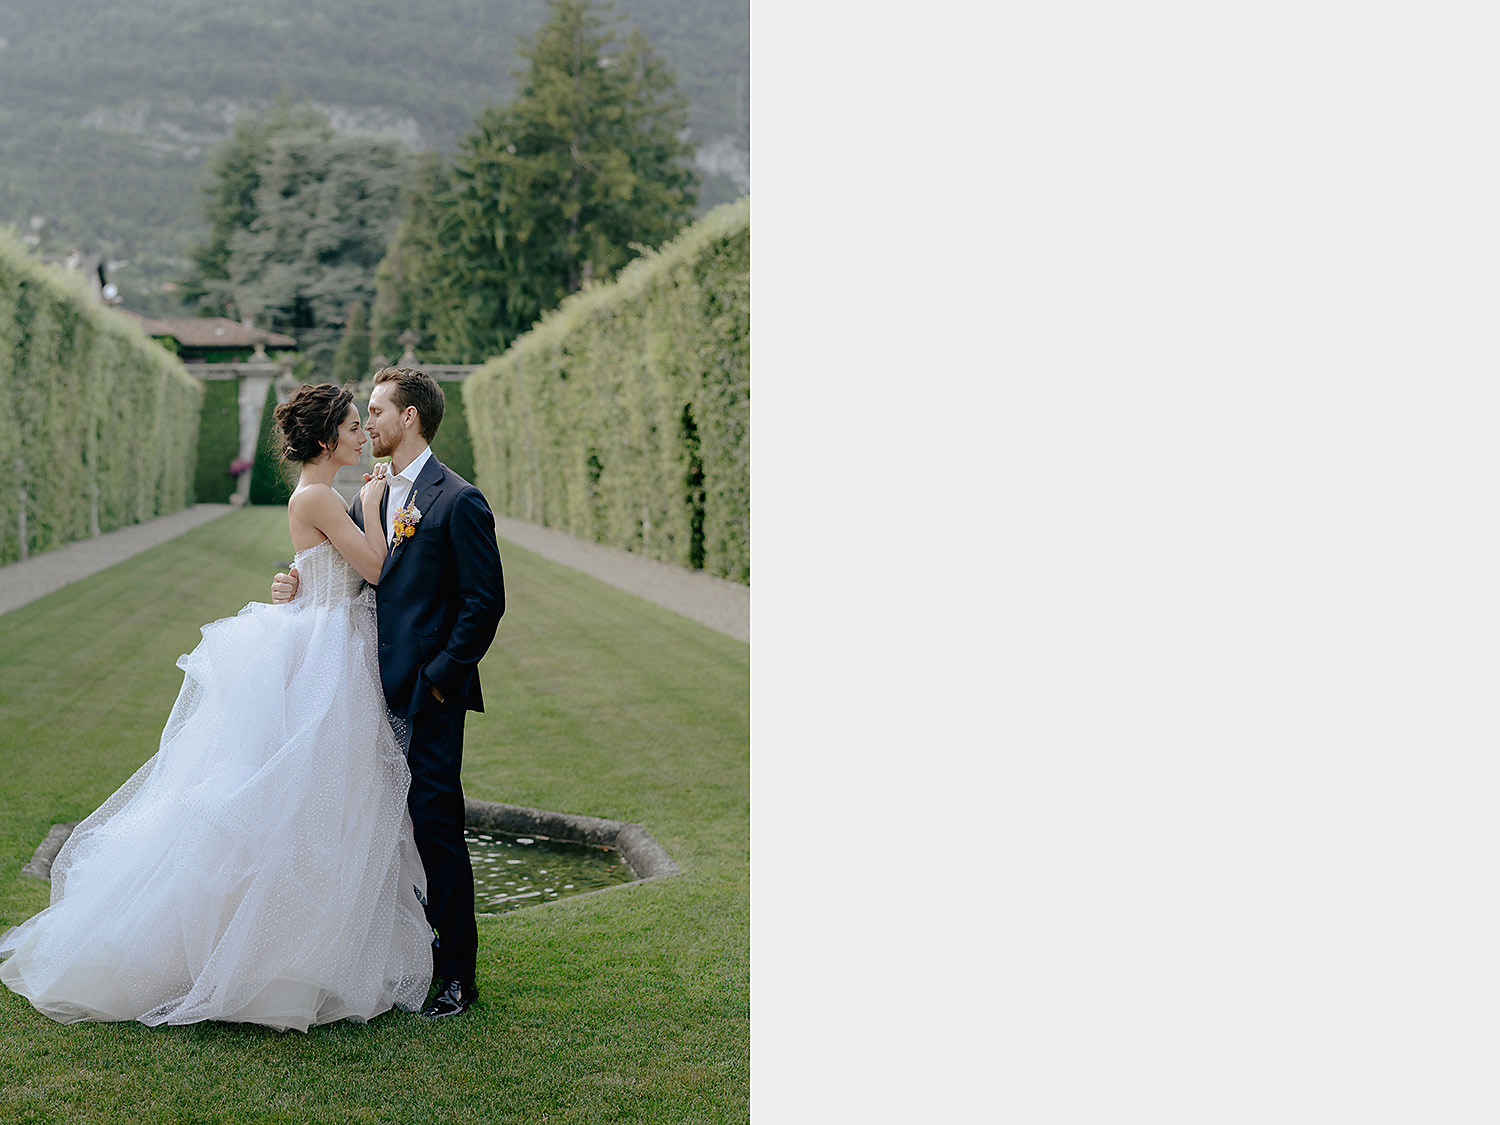 villa balbiano wedding photographer lake como bride groom first look garden